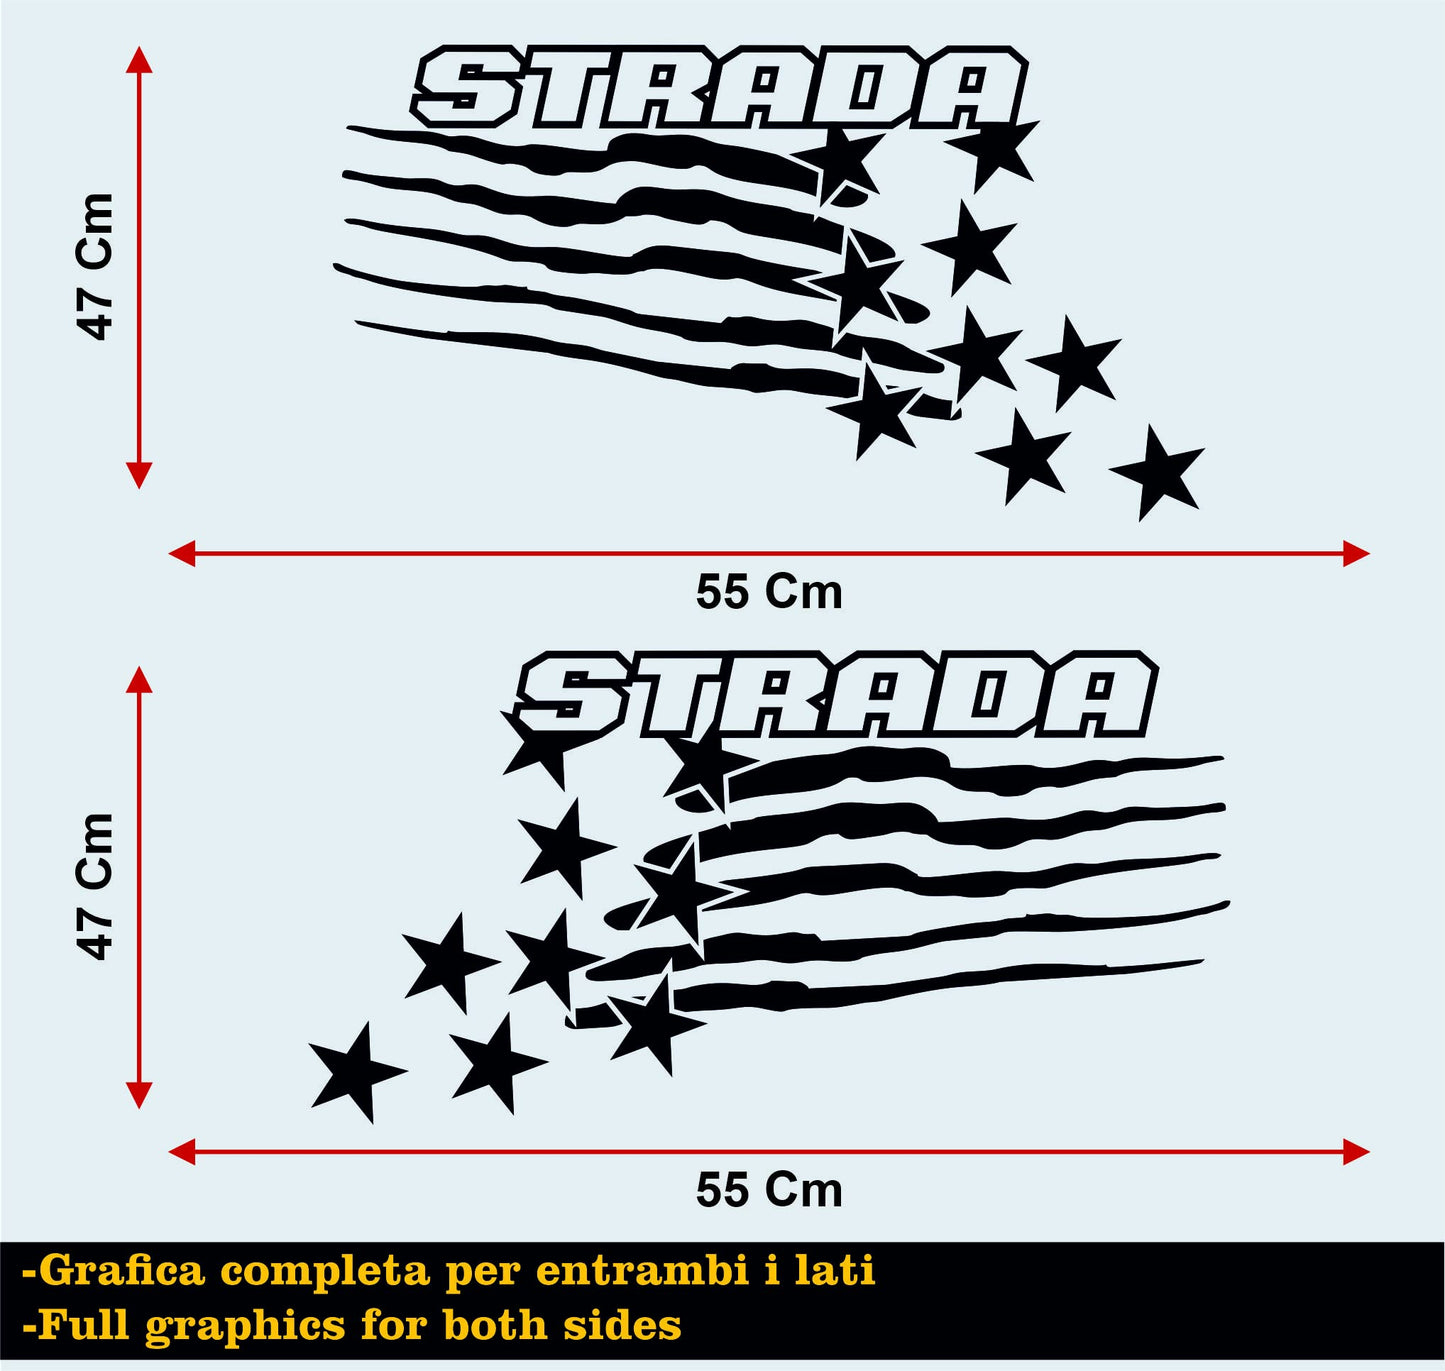 DualColorStampe Adesivi Compatibili con Benelli RS 900 (2004-2006) DX-SX Carena moto decal stickers Stelle Design M0170 a €39.99 solo da DualColorStampe